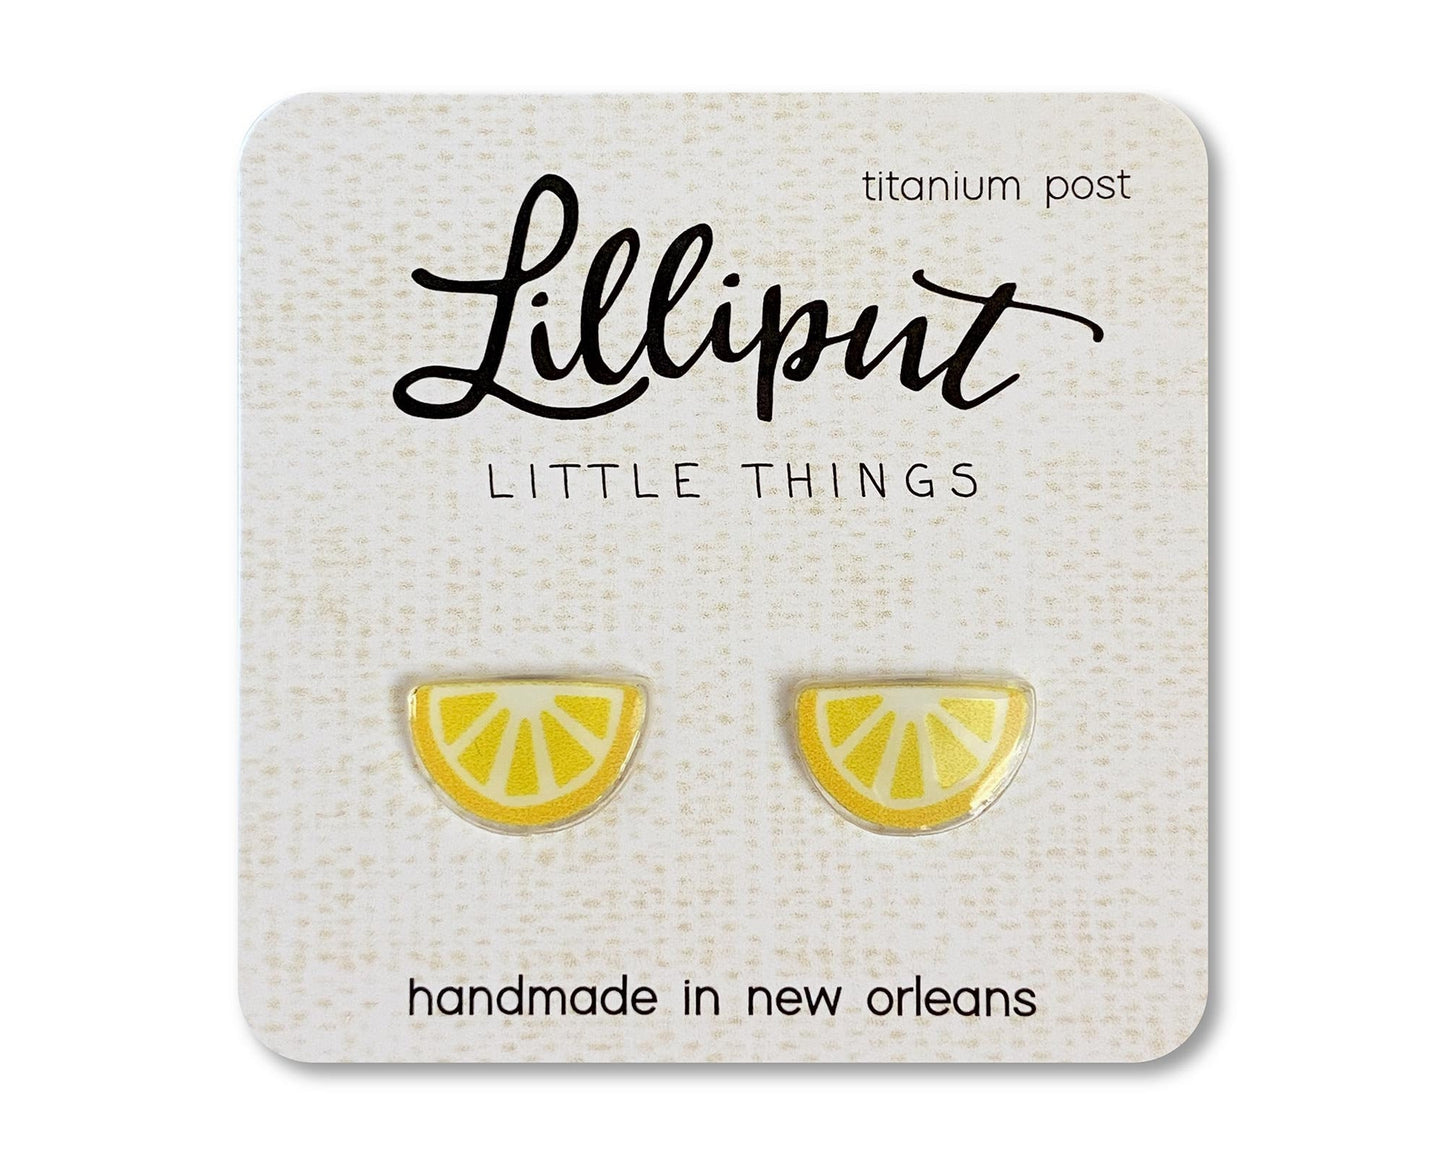 Lemon Wedge Earrings